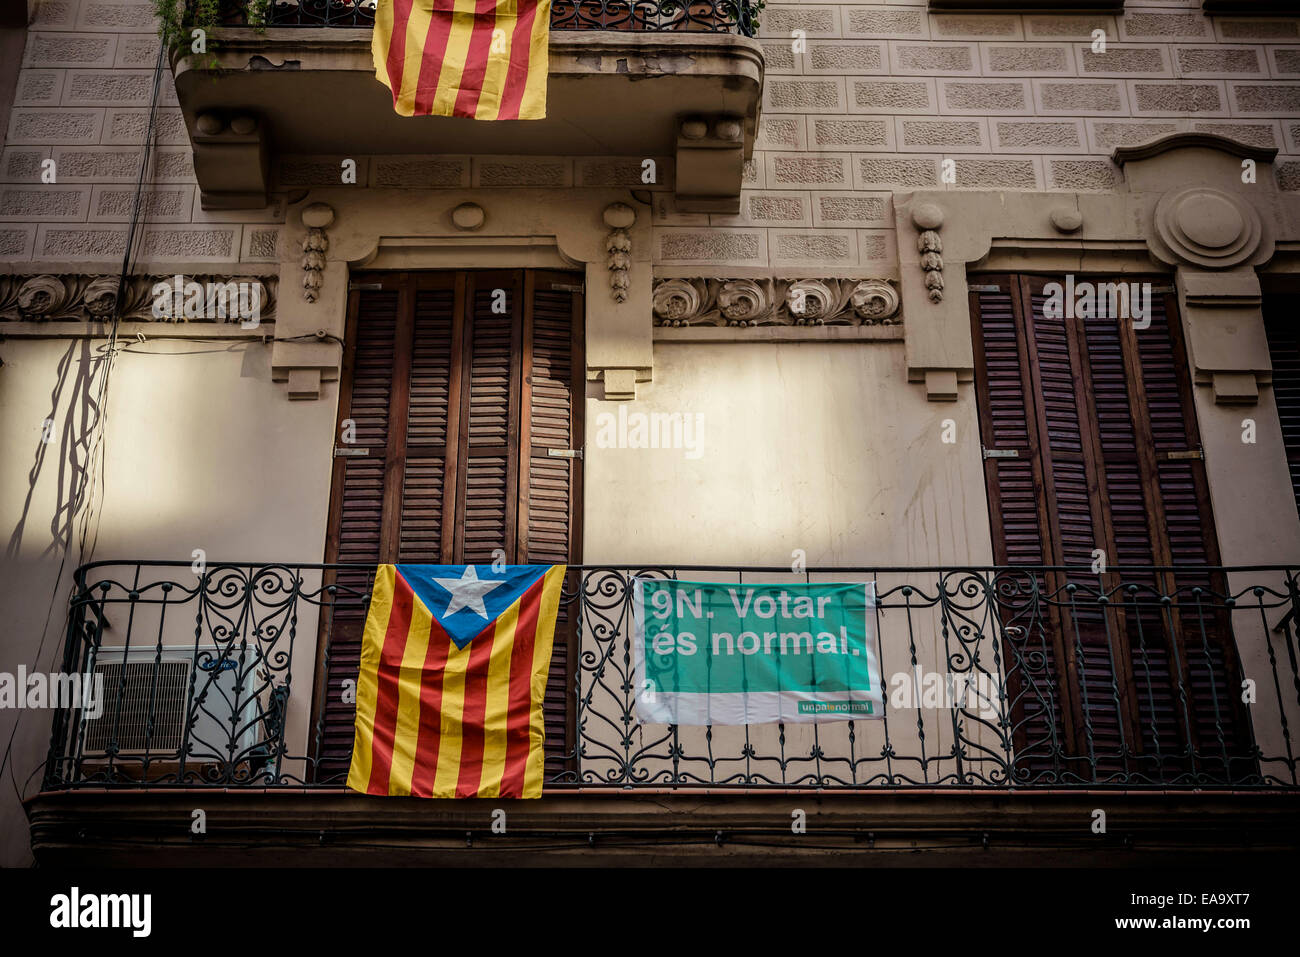 Barcelona, España. Noviembre 09th, 2014: pro-independencia las banderas son vistos en un balcón durante el "proceso participativo" consultas, "9N" sobre el futuro político de Cataluña: Crédito matthi/Alamy Live News Foto de stock